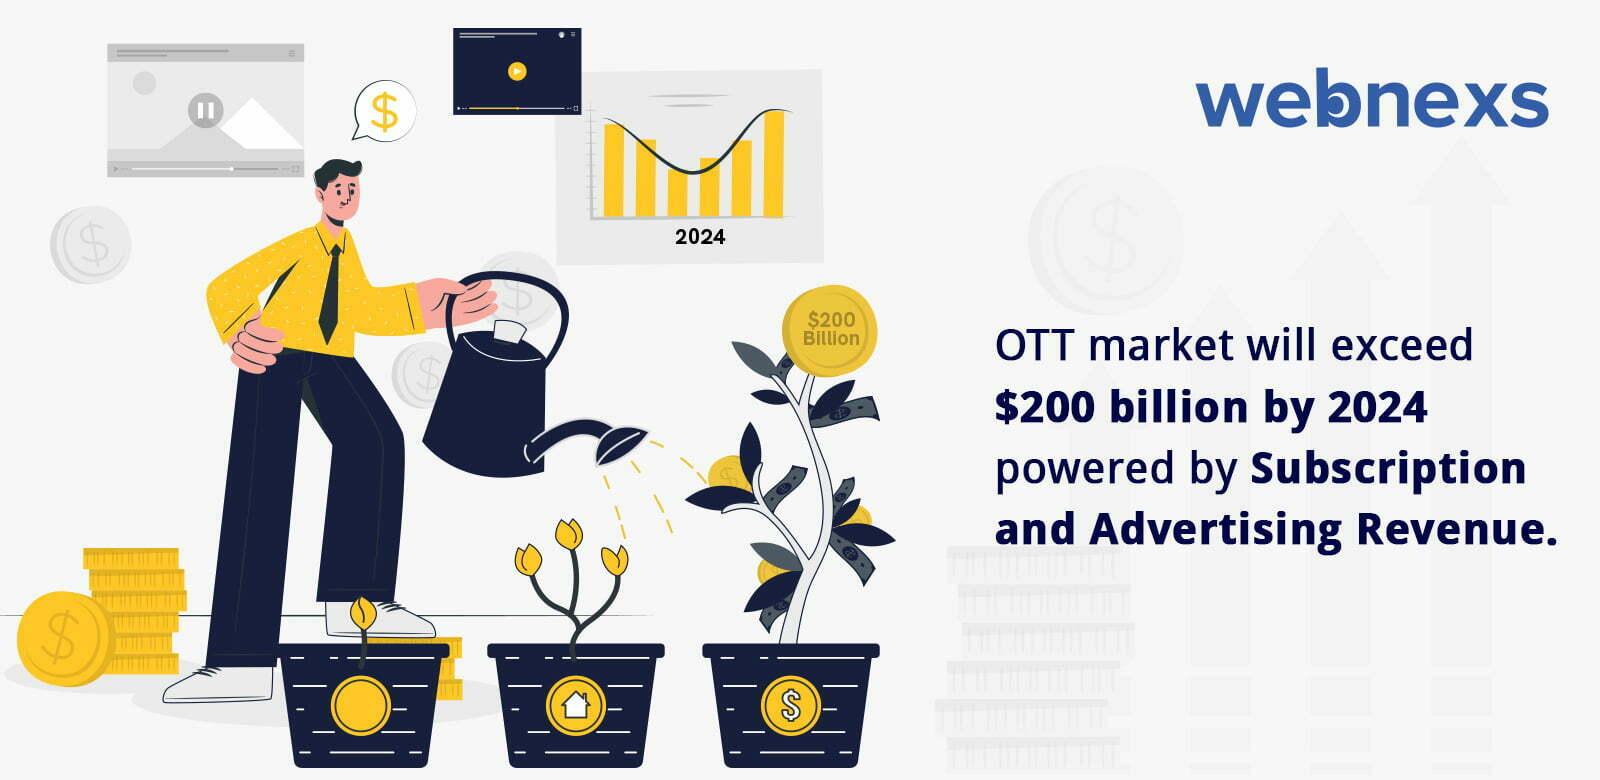 Top 7 OTT Industry Trends in 2022